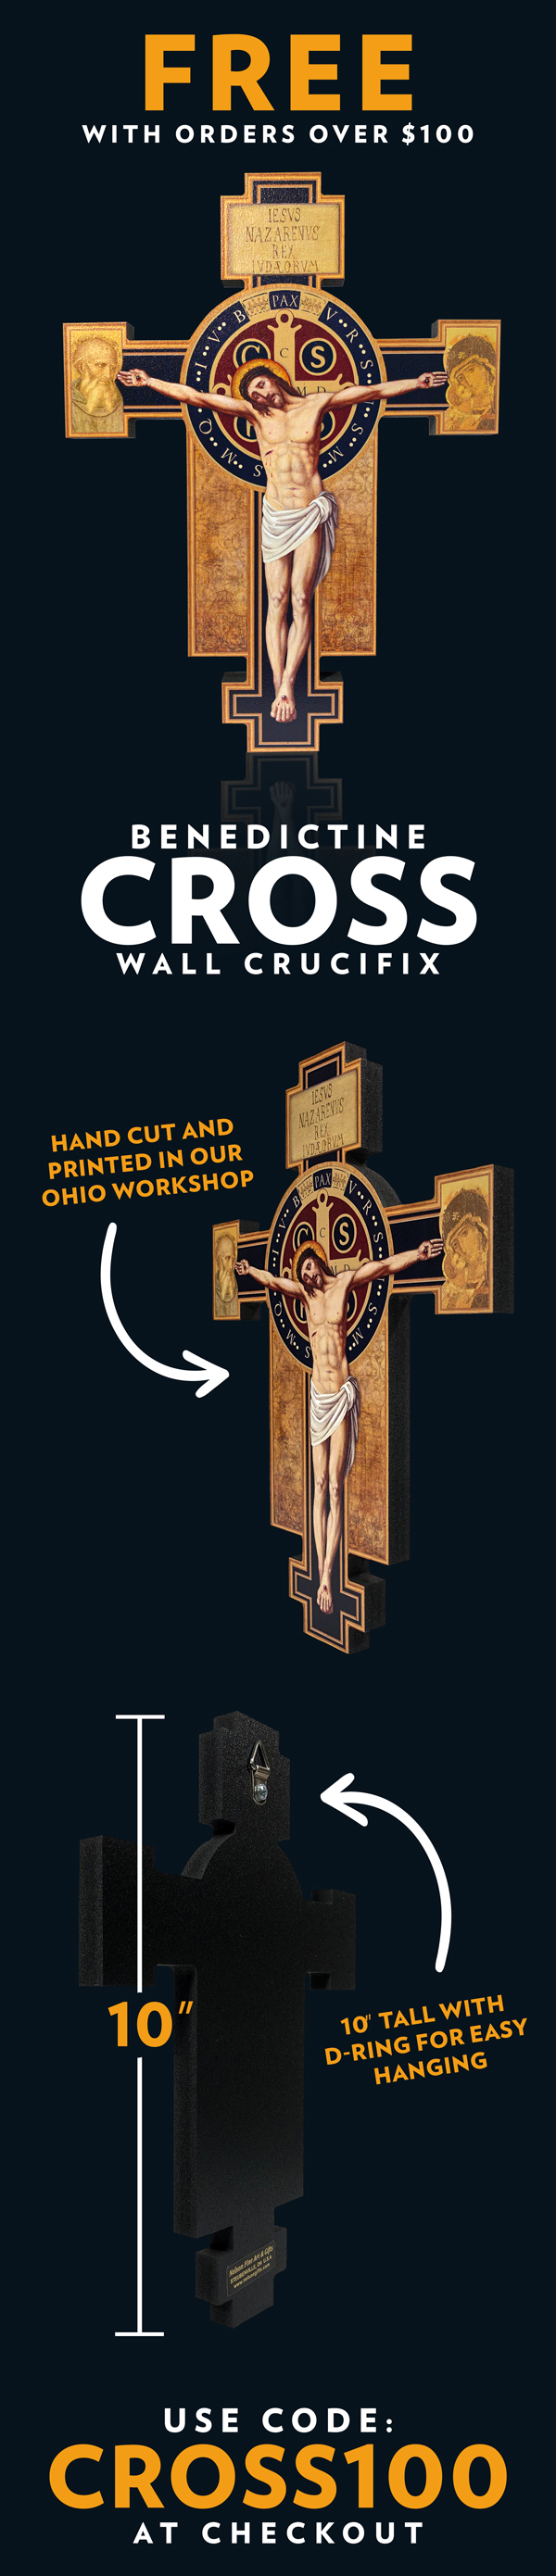 FREE Benedictine Cross